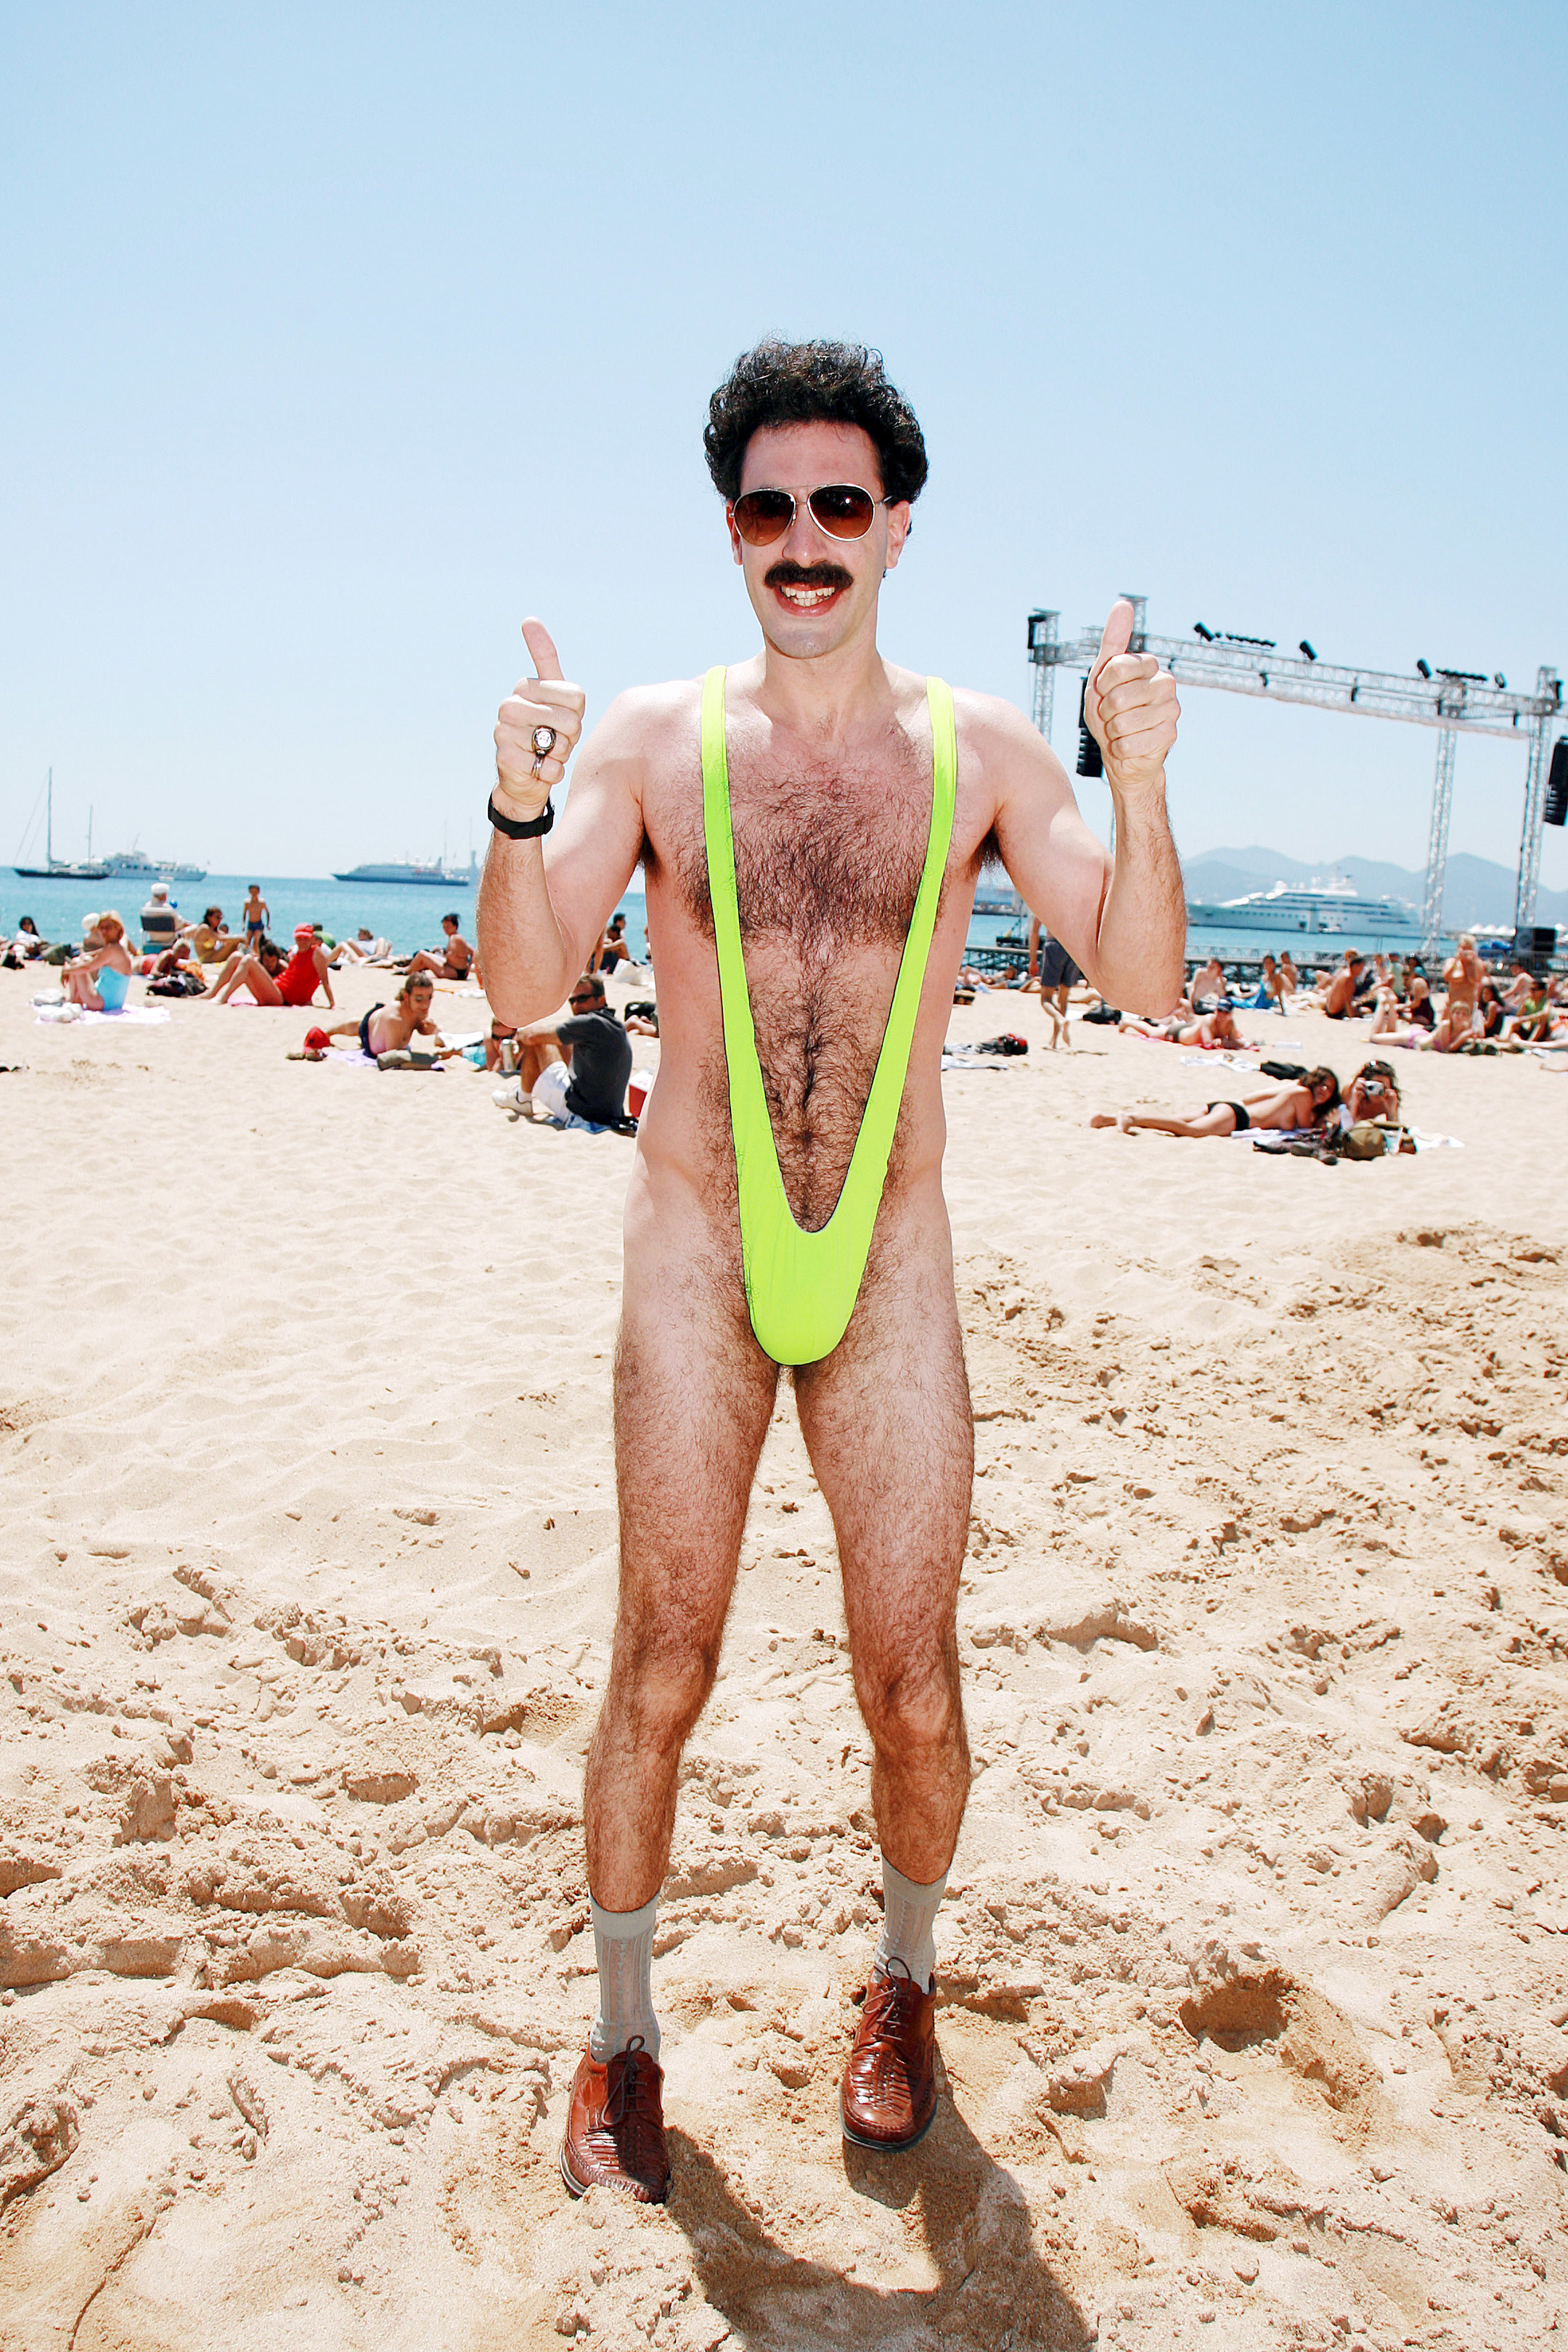 borat in bright revealing bathing suit